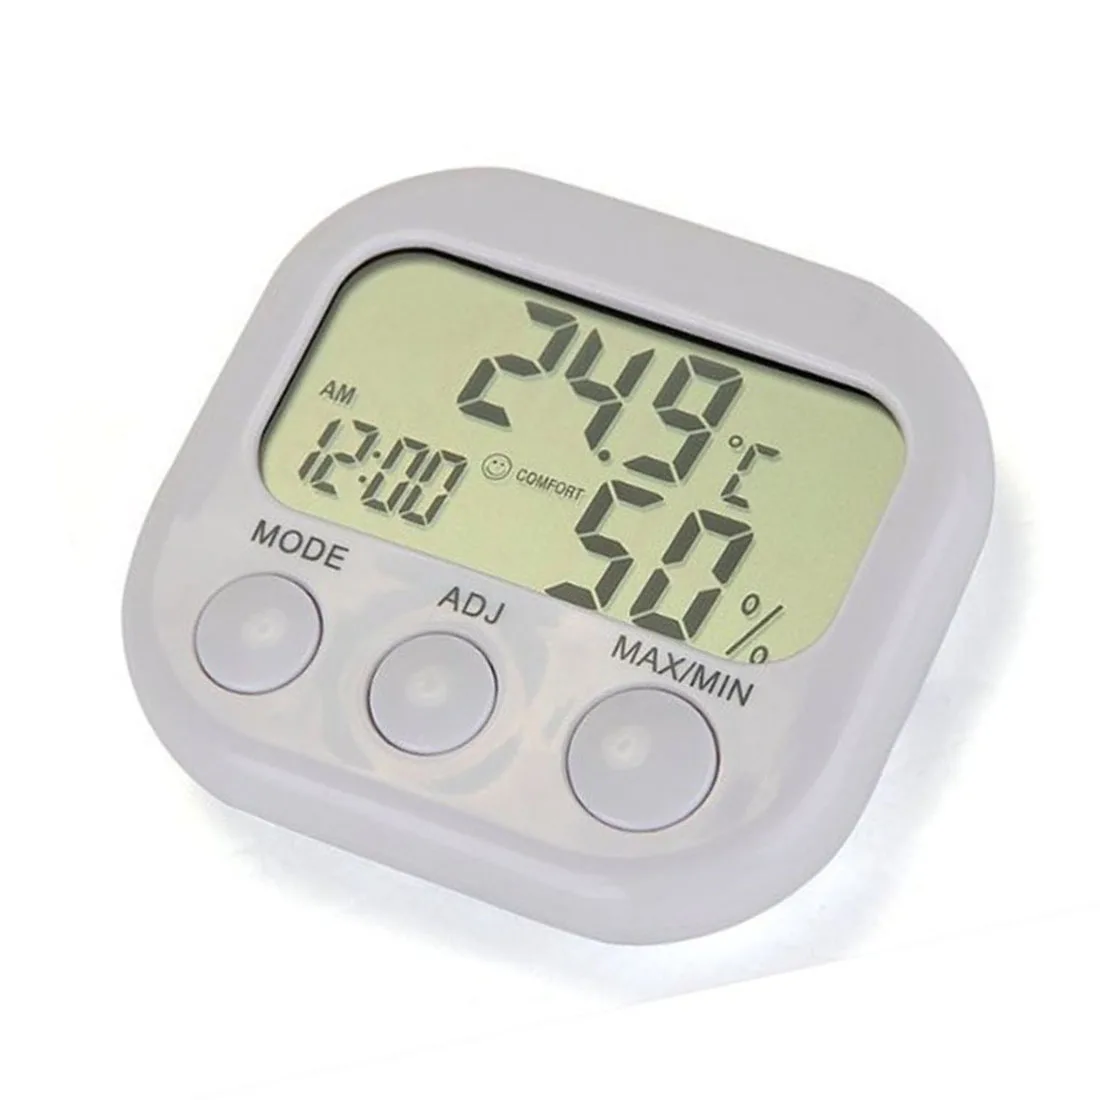 Мини цифровой термометр гигрометр для помещений ЖК-дисплей термо-гигрометры с подставкой для дома